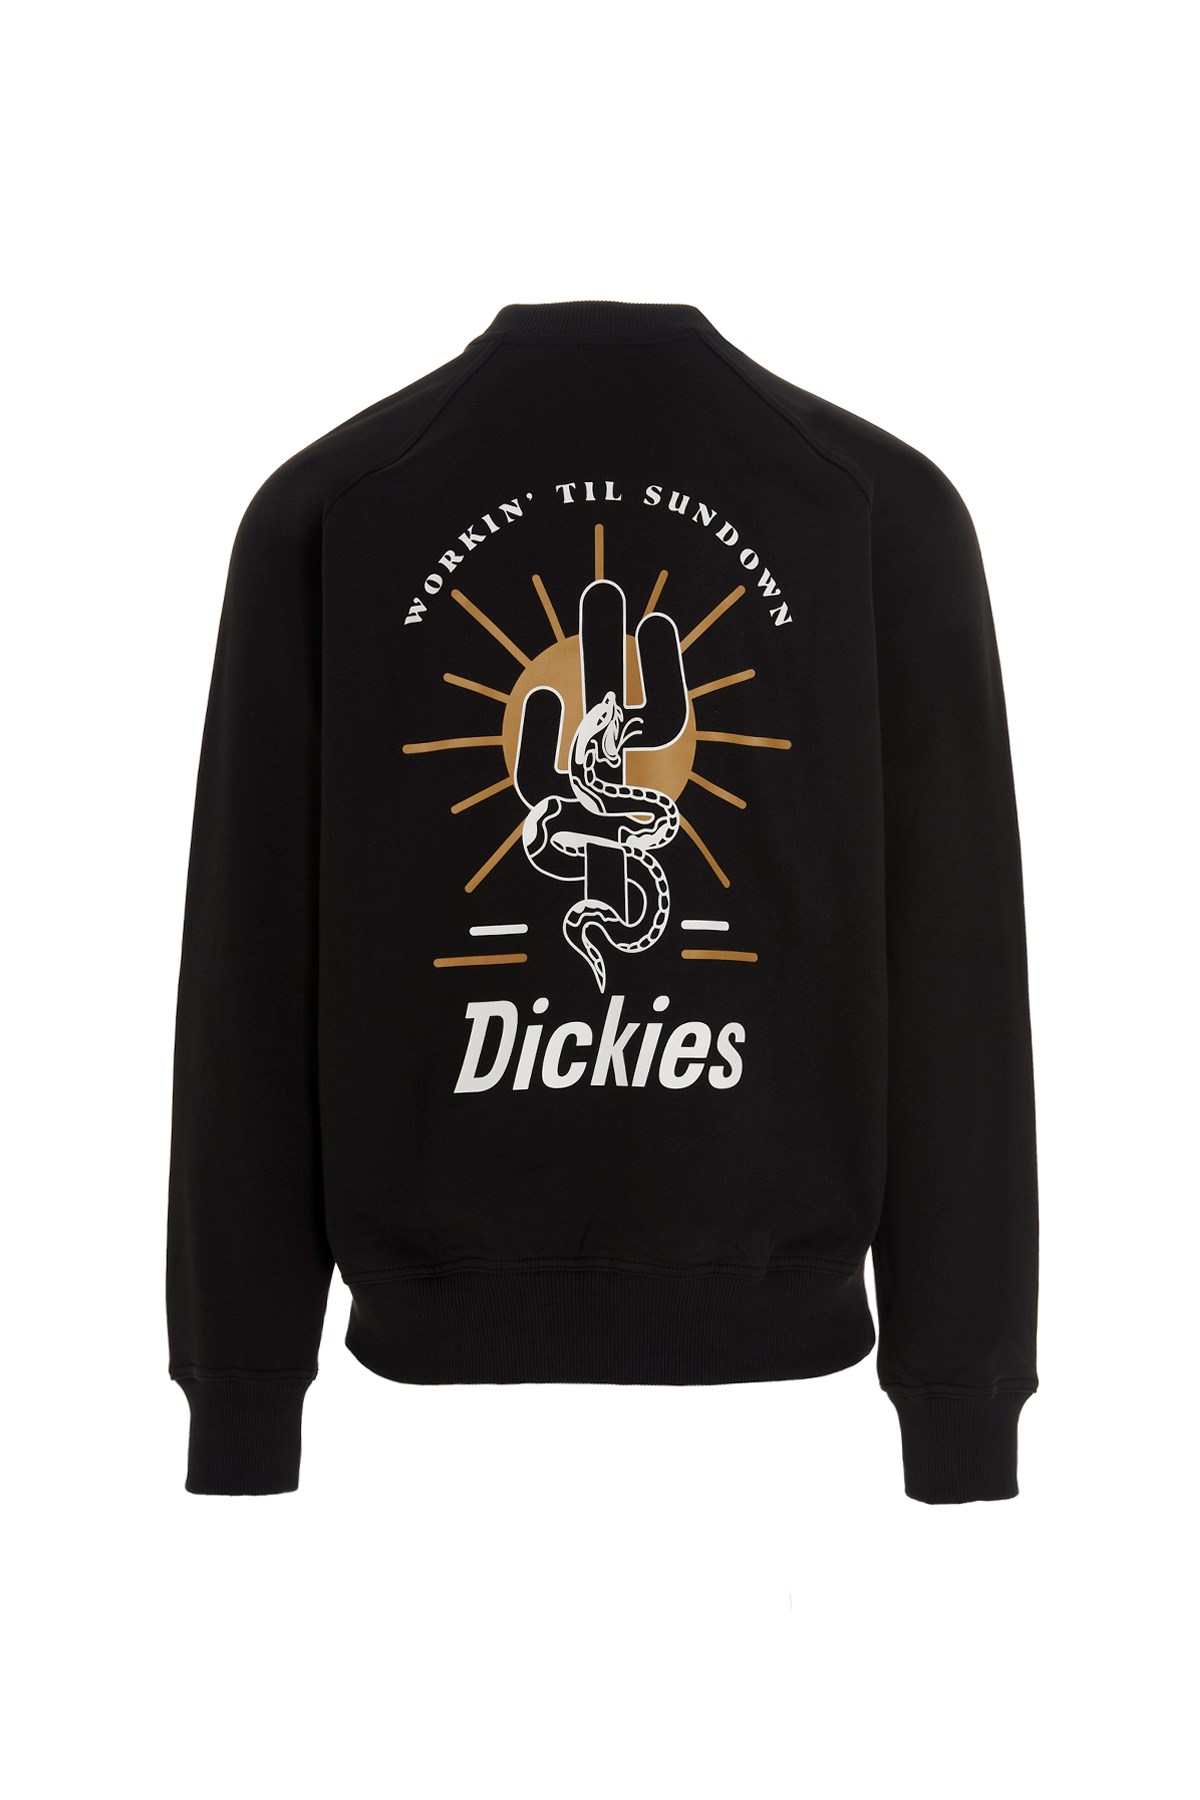 DICKIES 'Bettles’ Sweatshirt